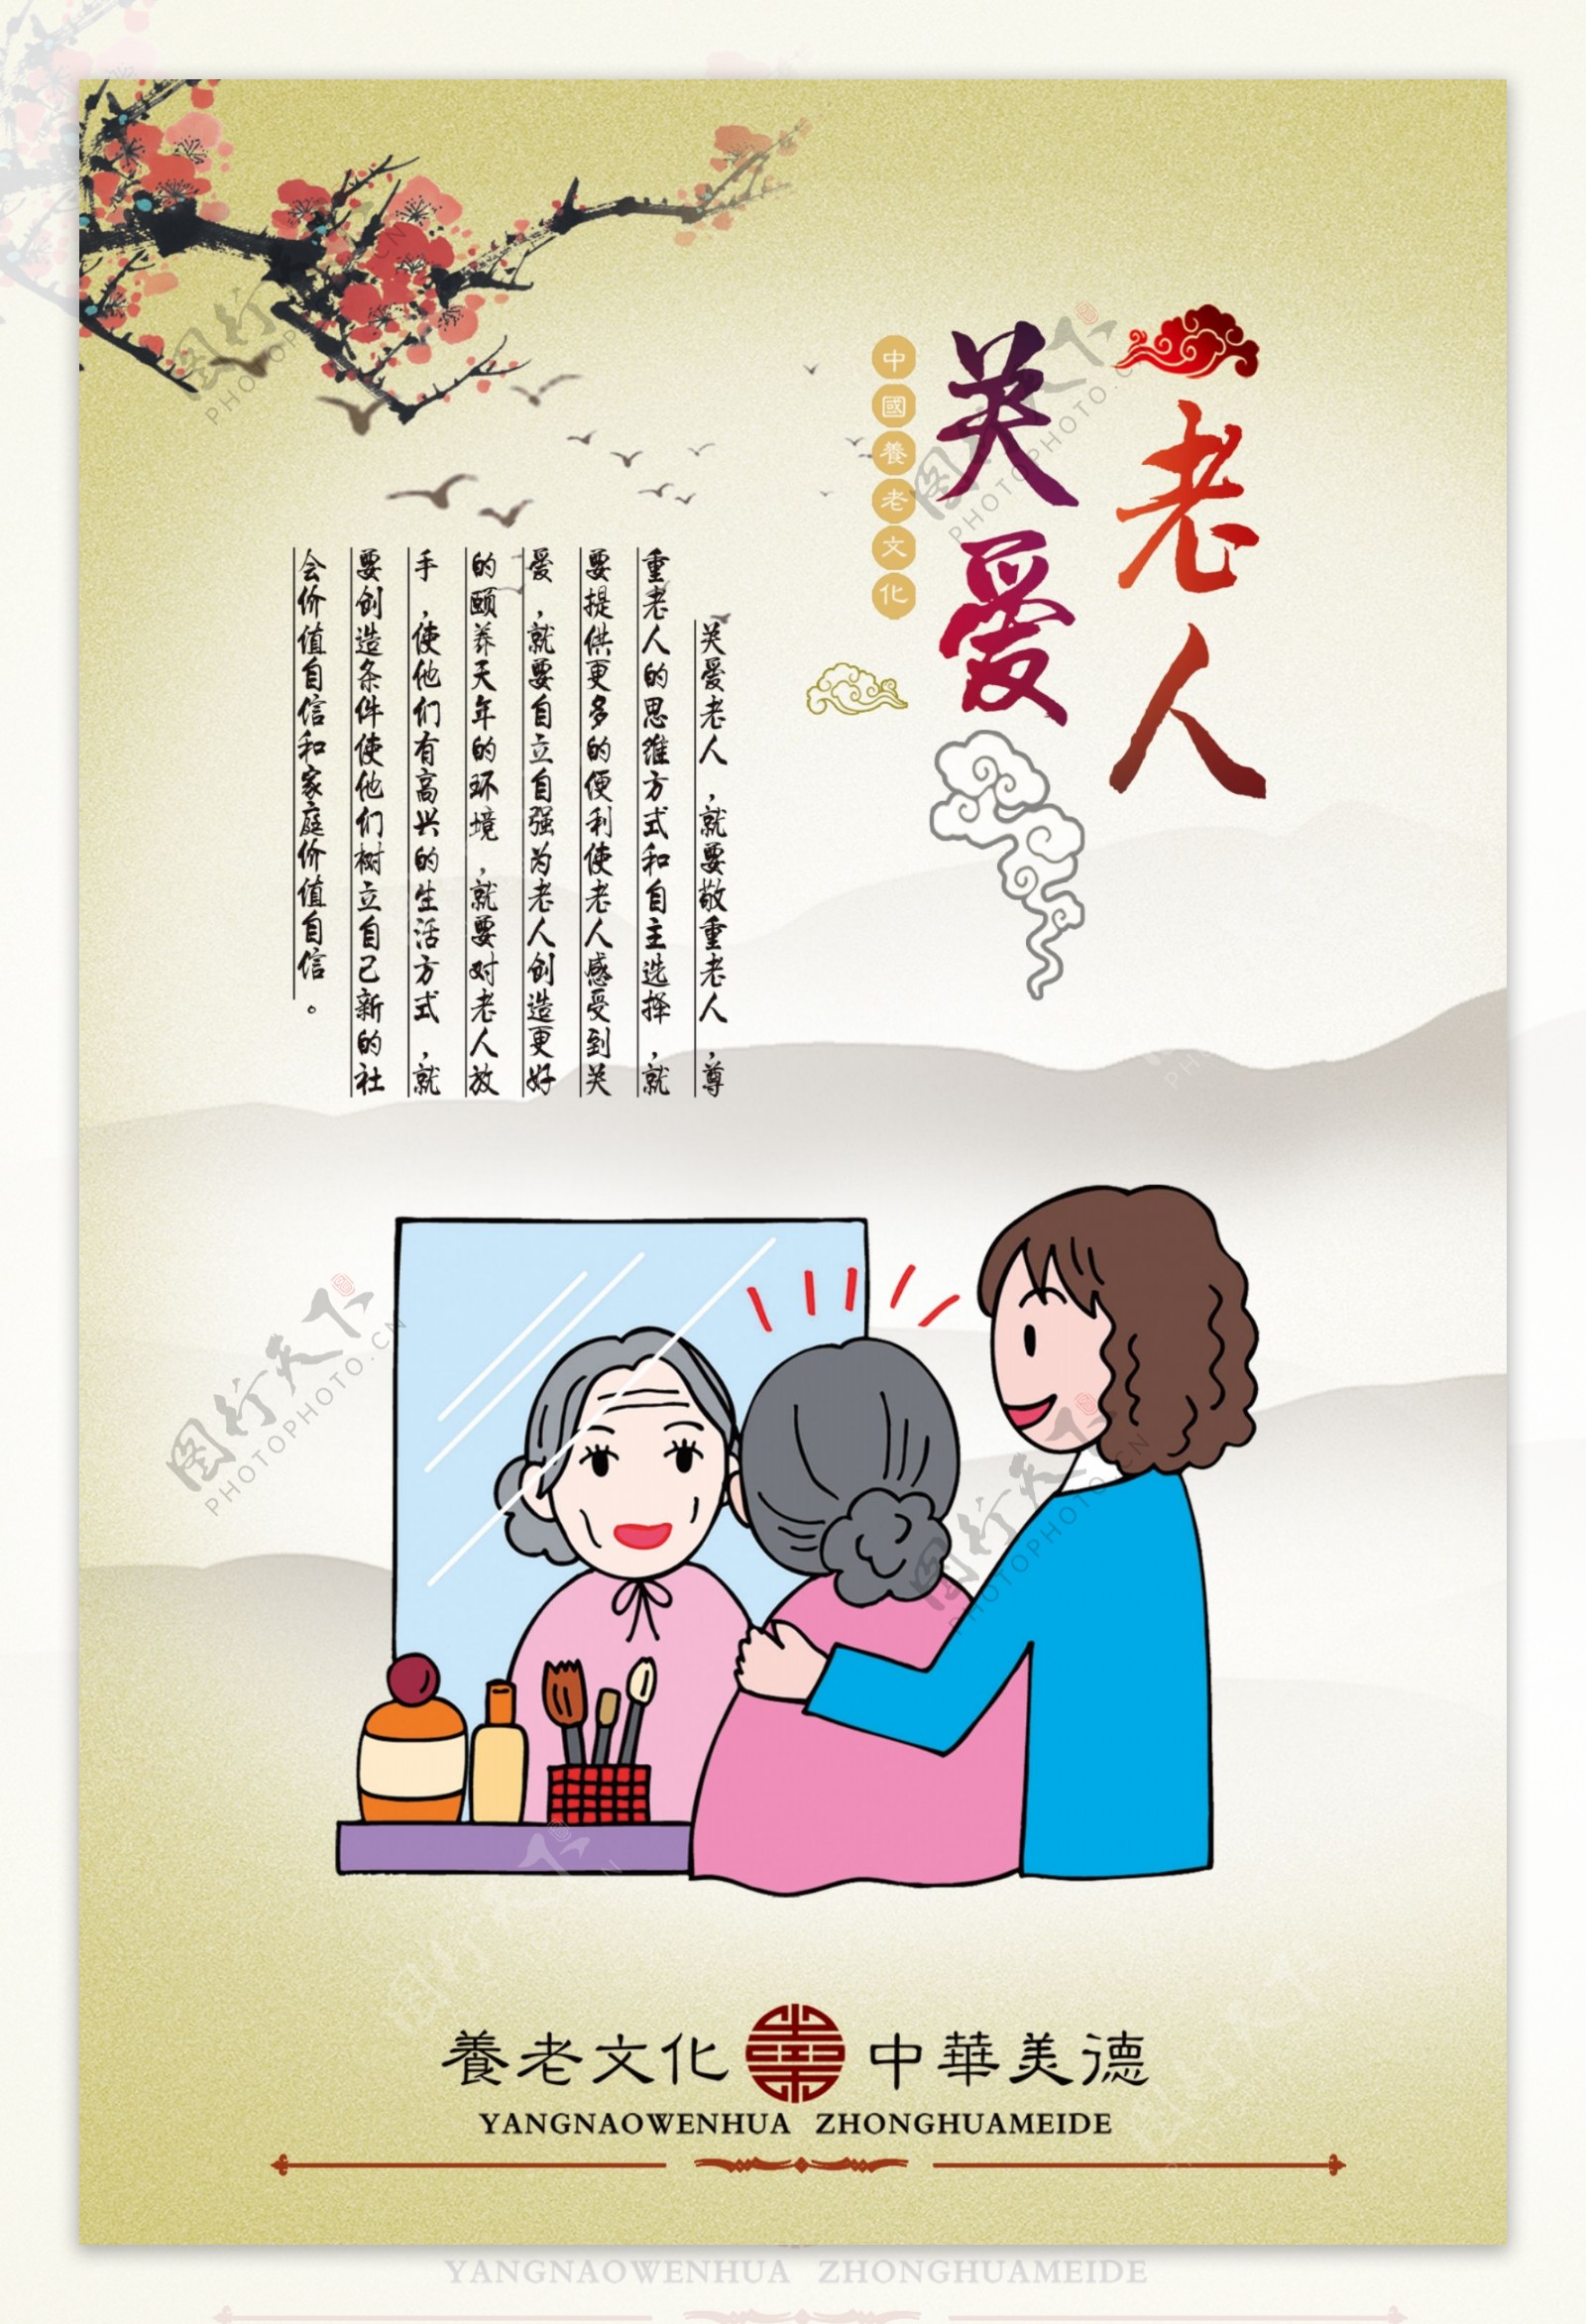 中华传统美德关爱老人